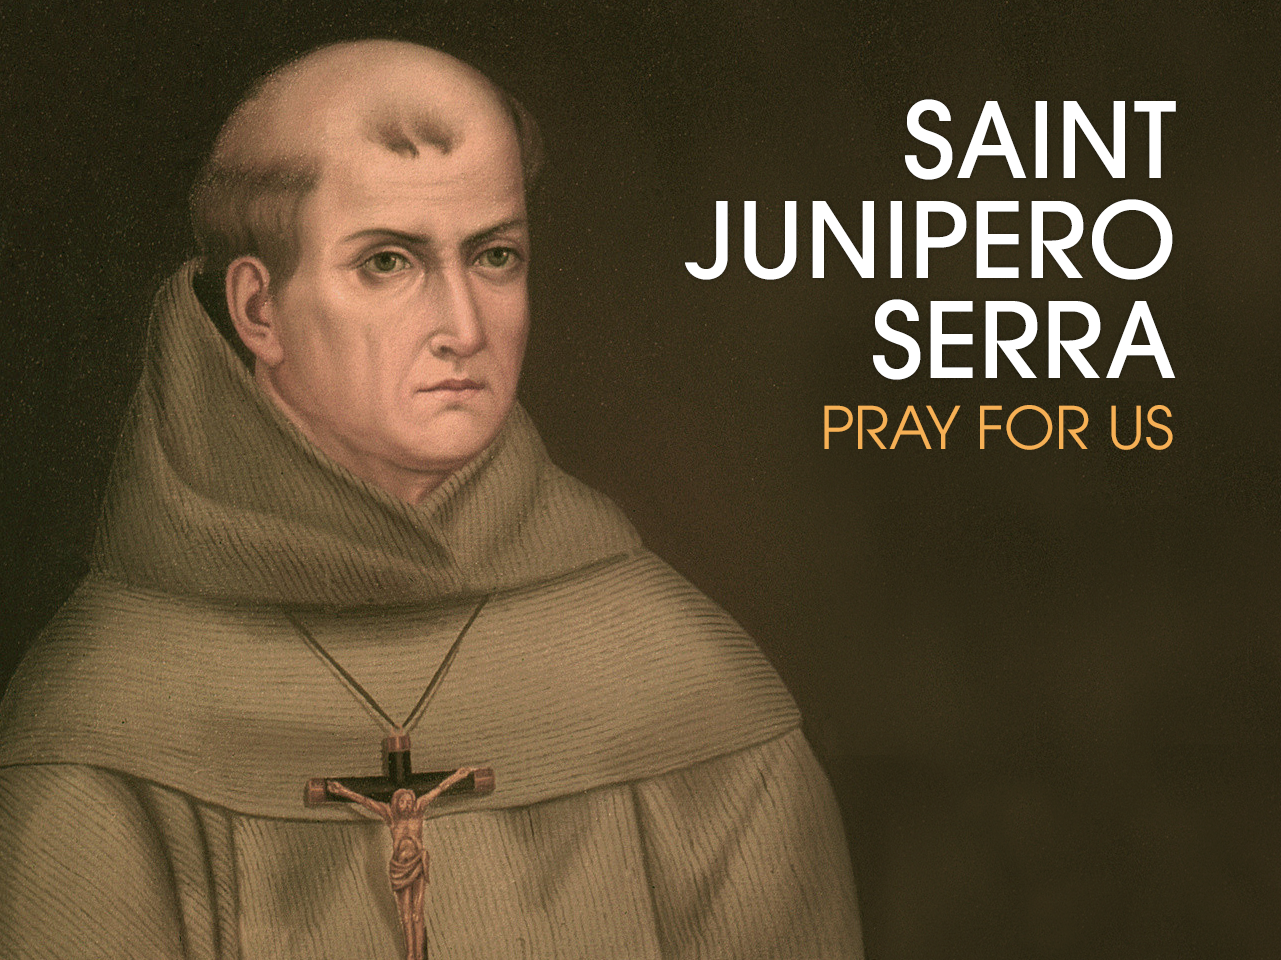 St. Junipero Serra